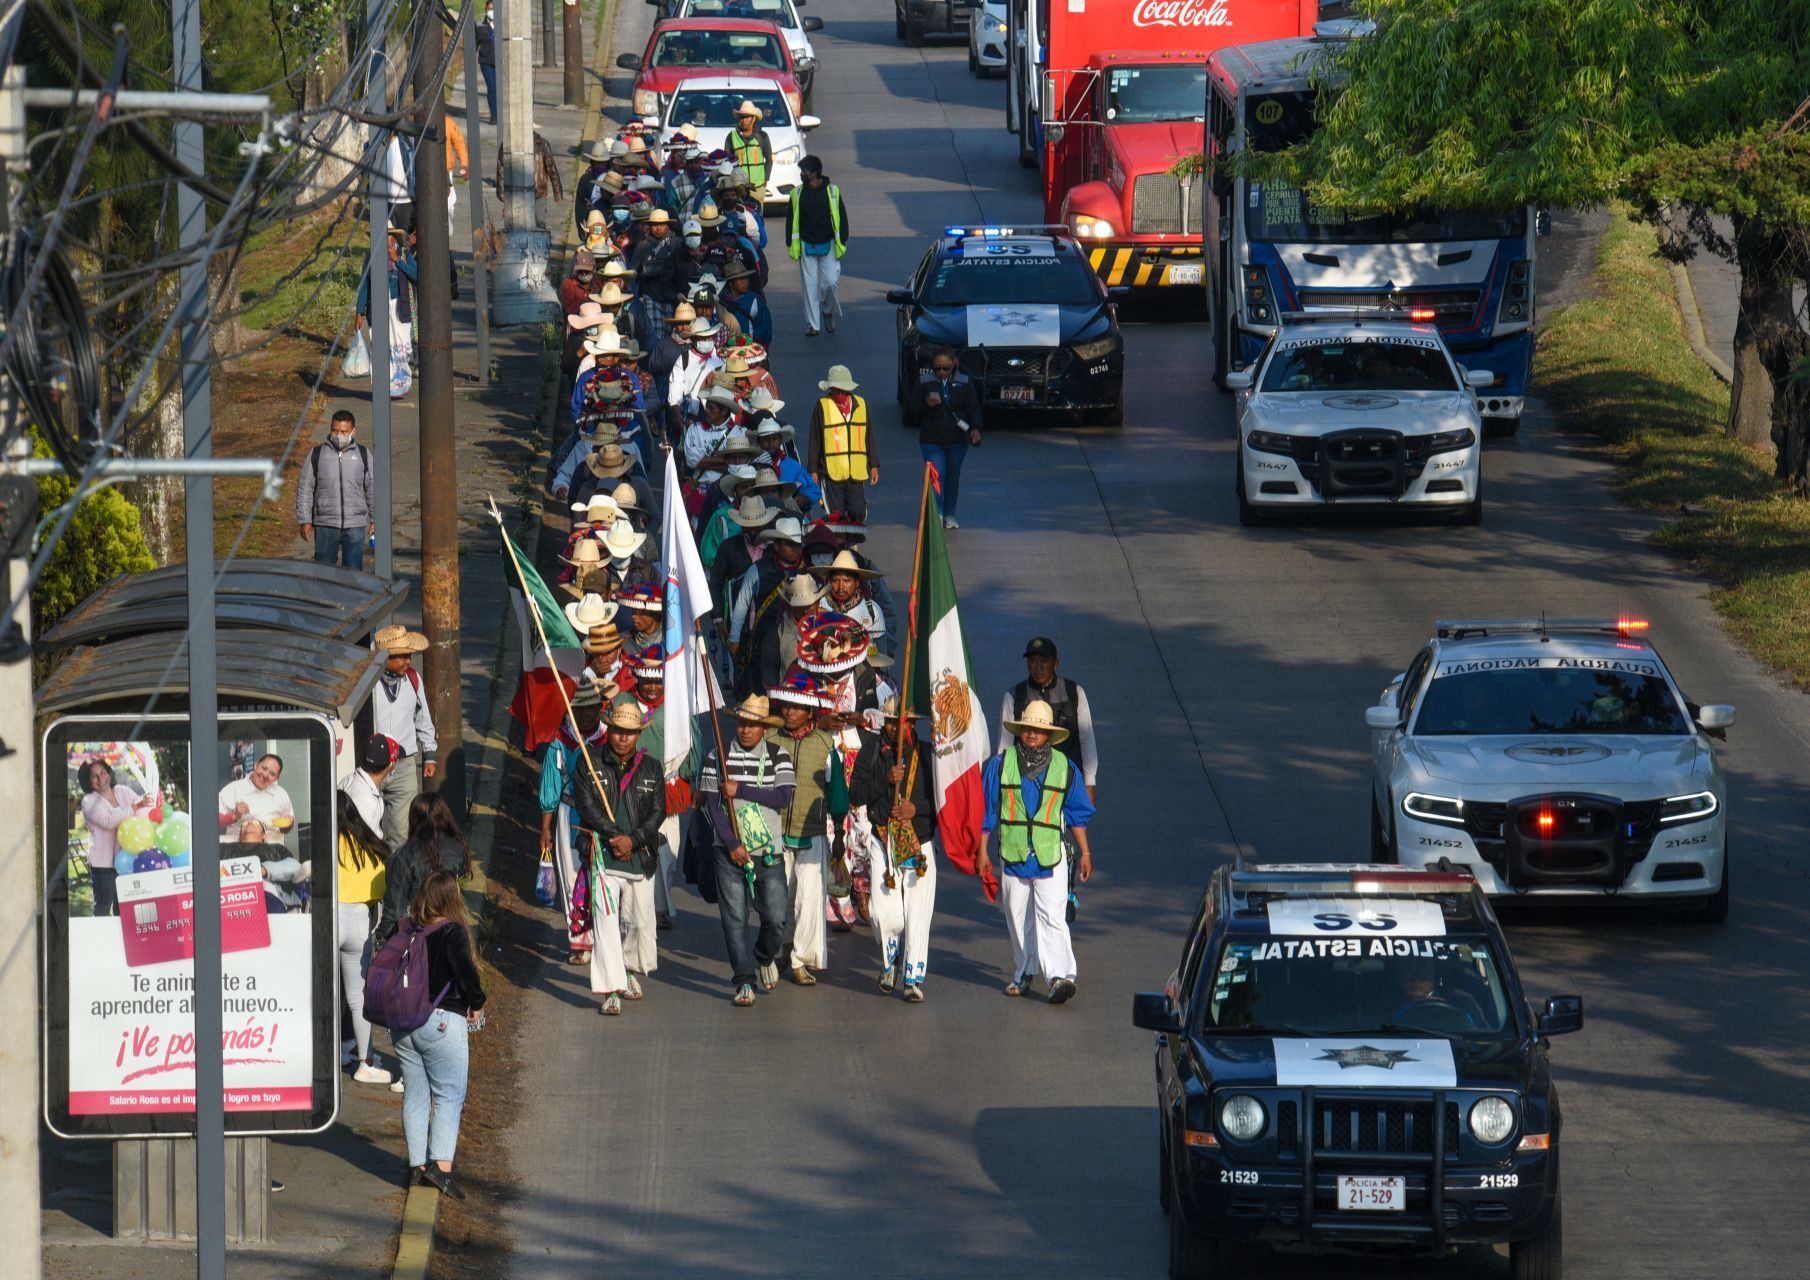  La caravana tardó poco más de un mes en llegar a la Ciudad de México (FOTO: ADOLFO VLADIMIR /CUARTOSCURO.COM)